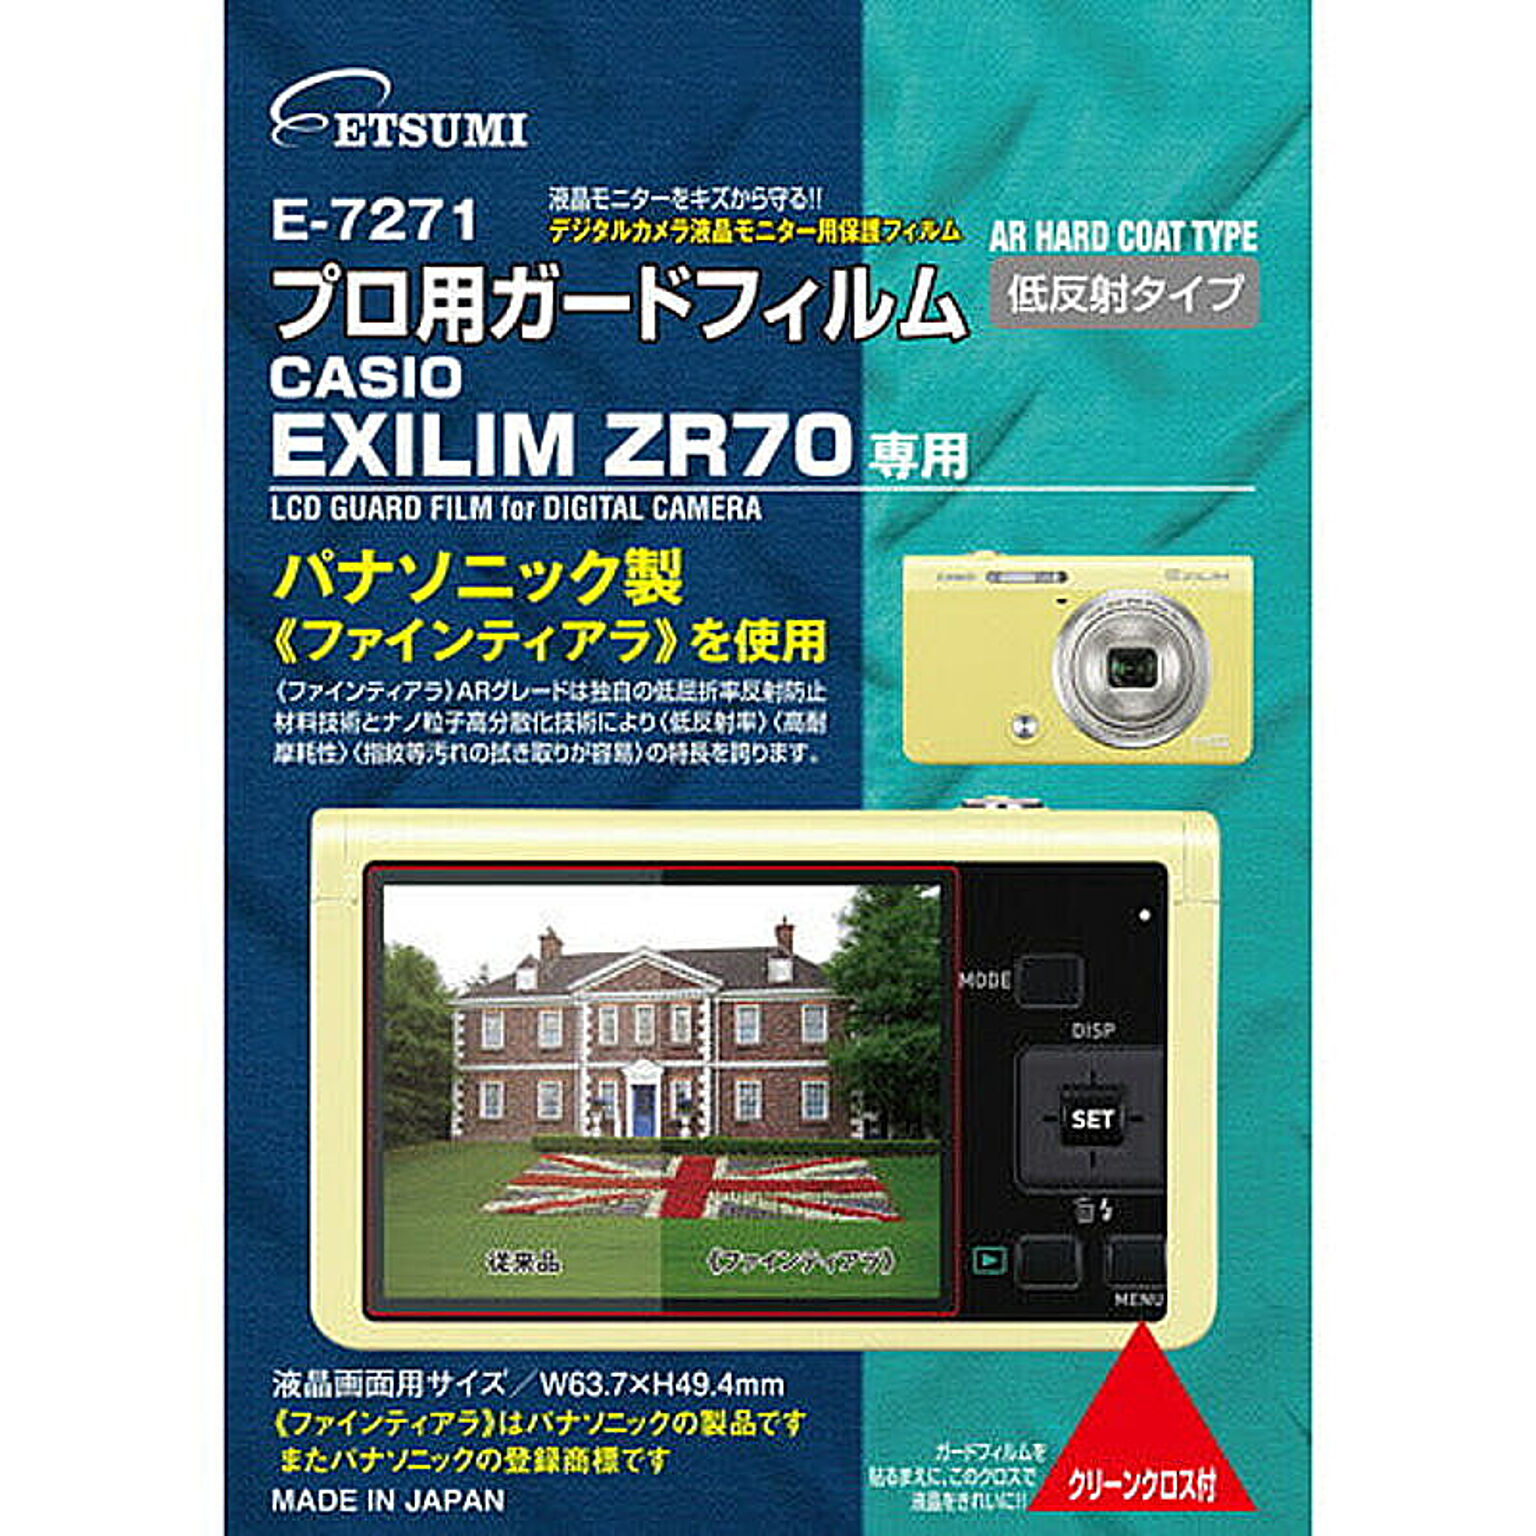 エツミ プロ用ガードフィルムAR CASIO EXLIM ZR70専用 E-7271 管理No. 4975981727191